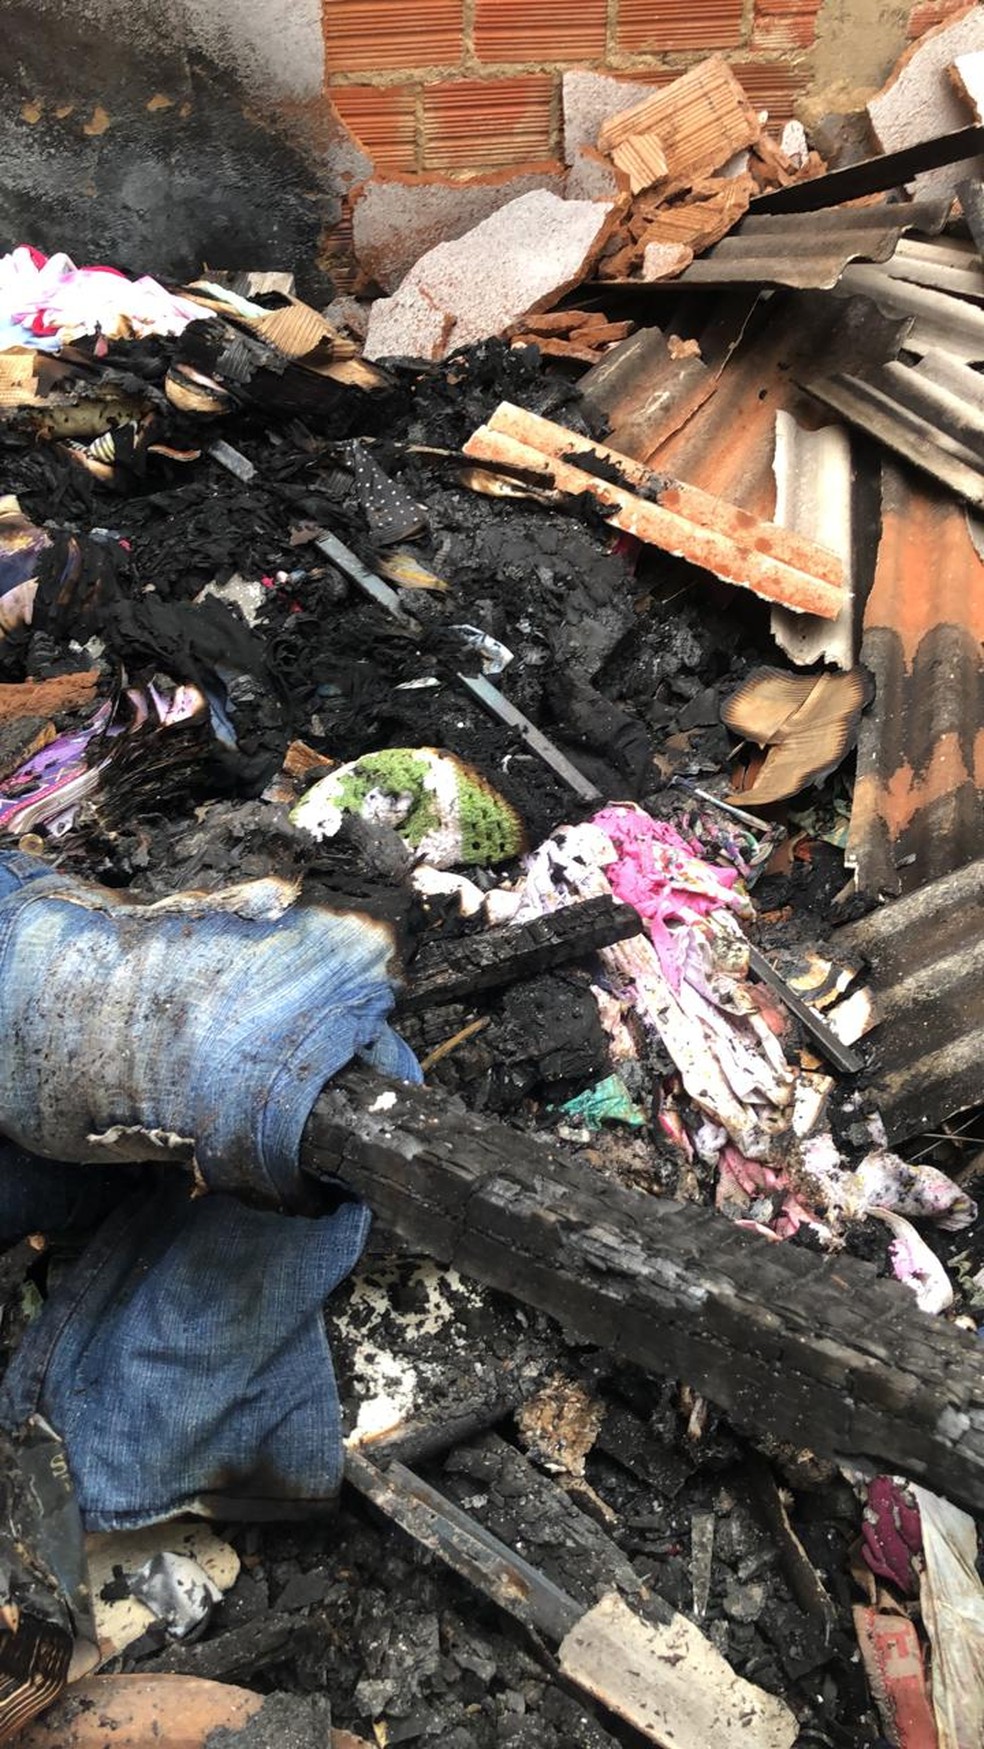 Roupa de bebê rosa entre os destroços de um incêndio em residência de Porto Velho — Foto: Thais Gomes/Rede Amazônica